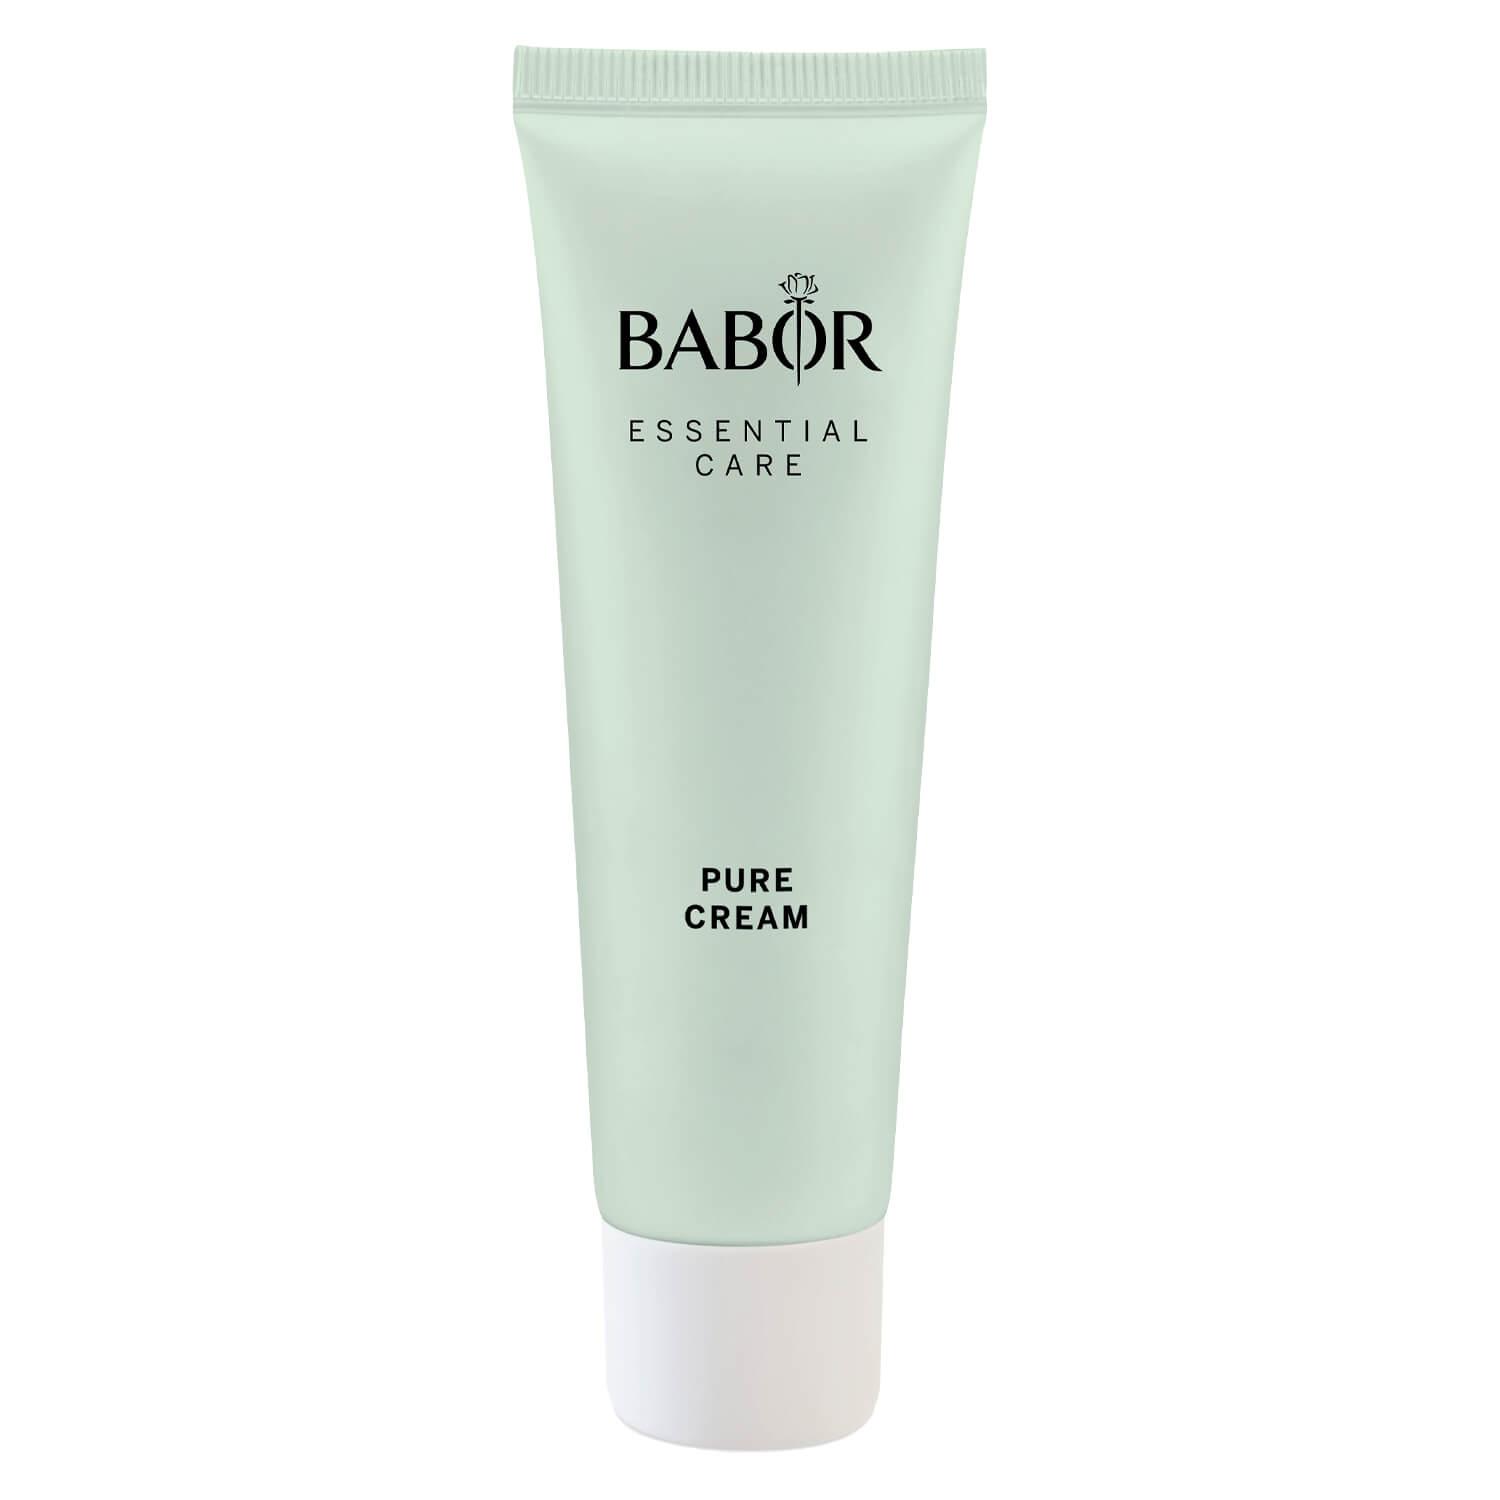 BABOR ESSENTIAL CARE - Pure Cream Acne-Prone Skin